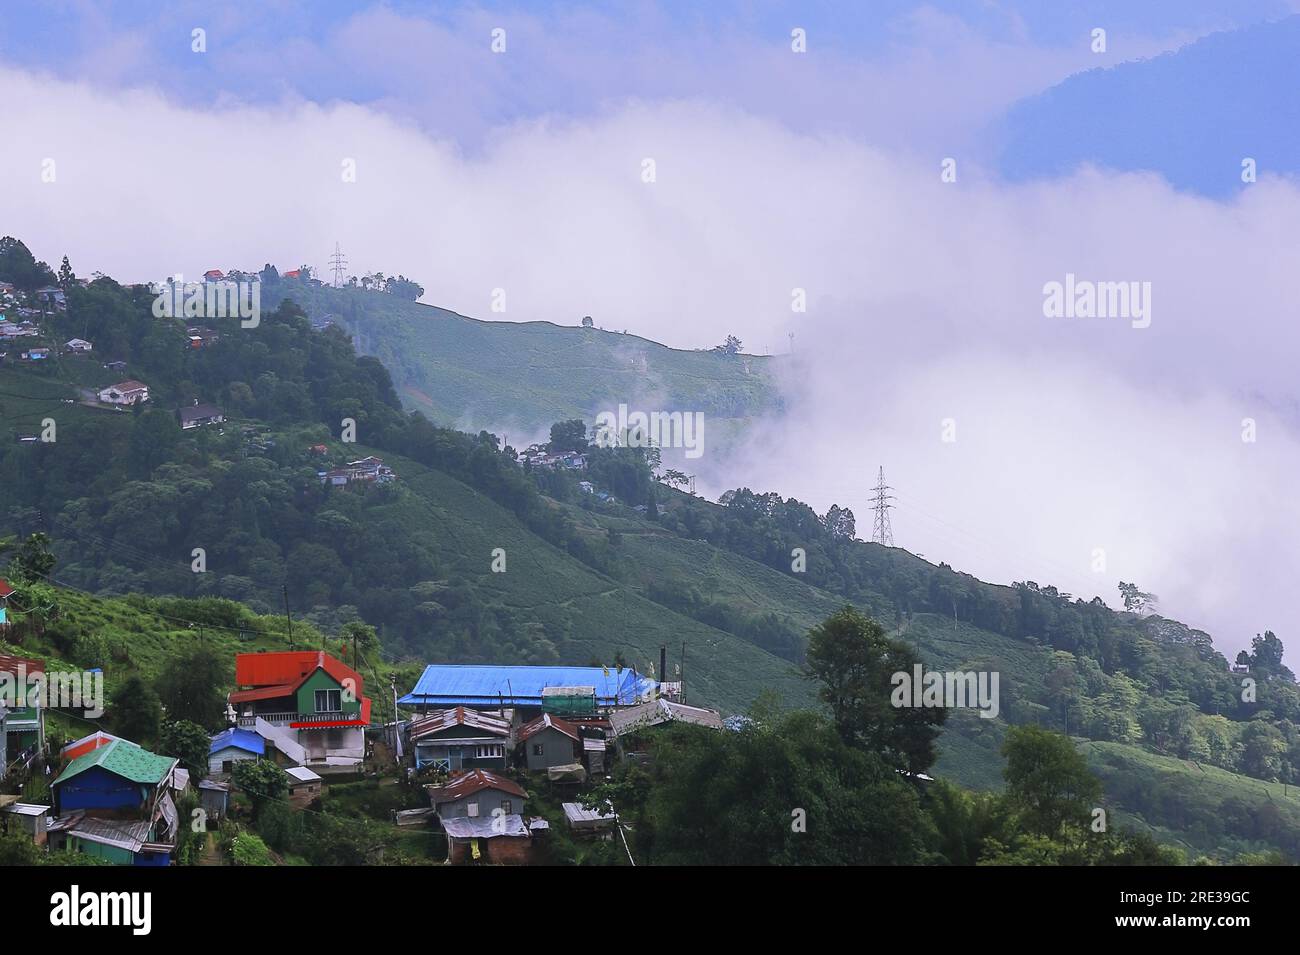 Panoramablick auf das neblige und bewölkte Bergdorf, umgeben von grünem Wald in der Monsunzeit, in der Nähe der darjeeling Hill Station in westbengalen in indien Stockfoto